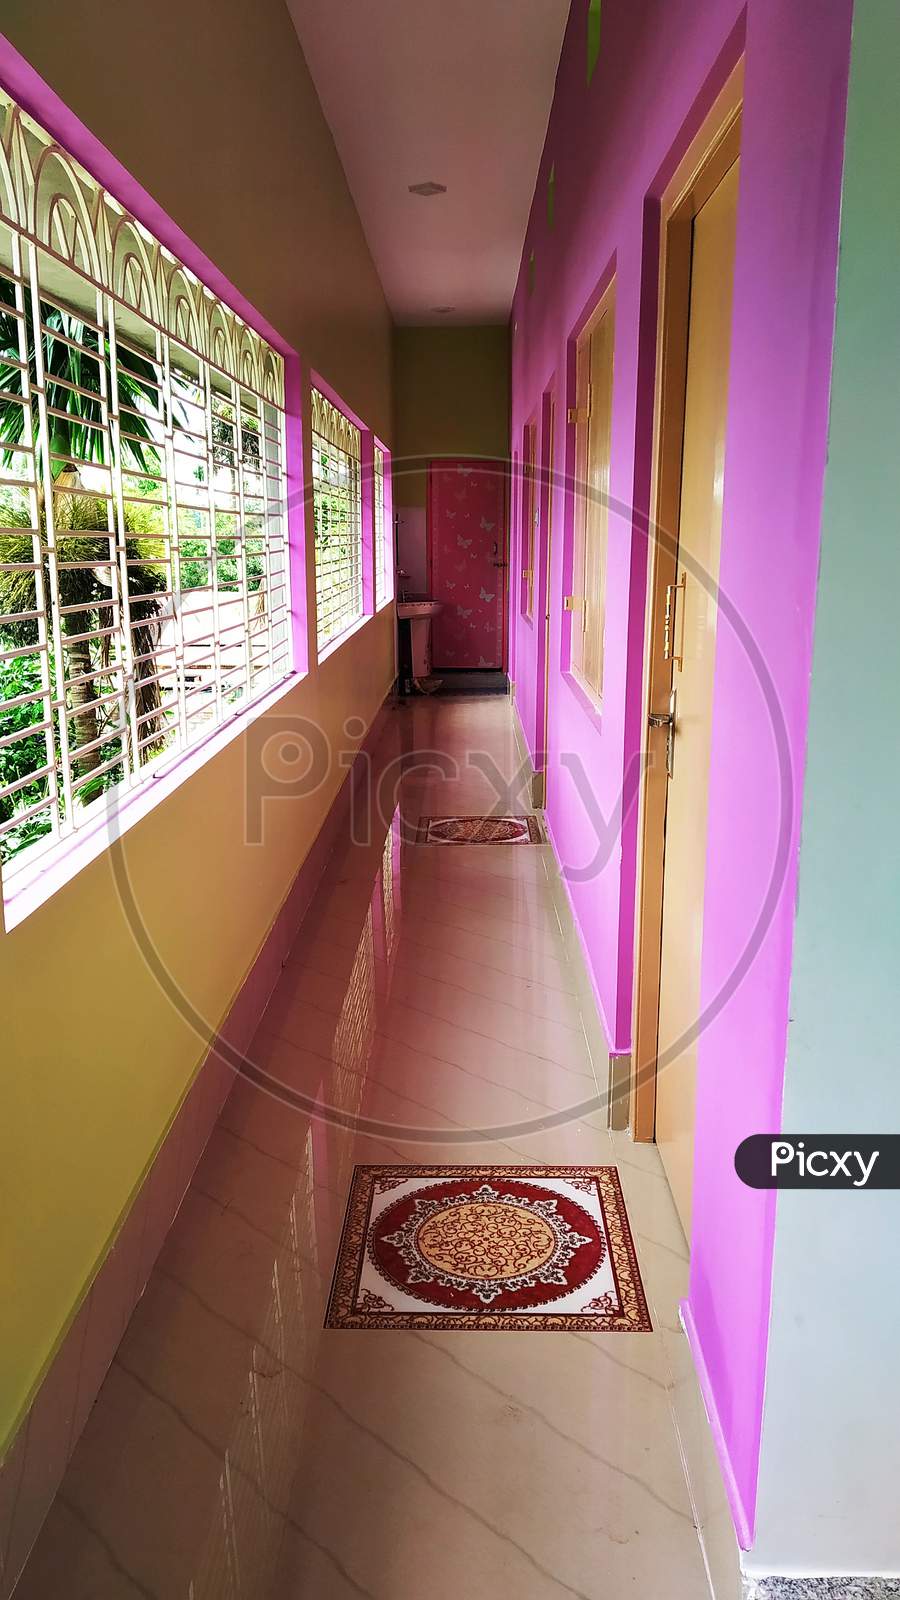 An Interior Of A House With A Long Corridor